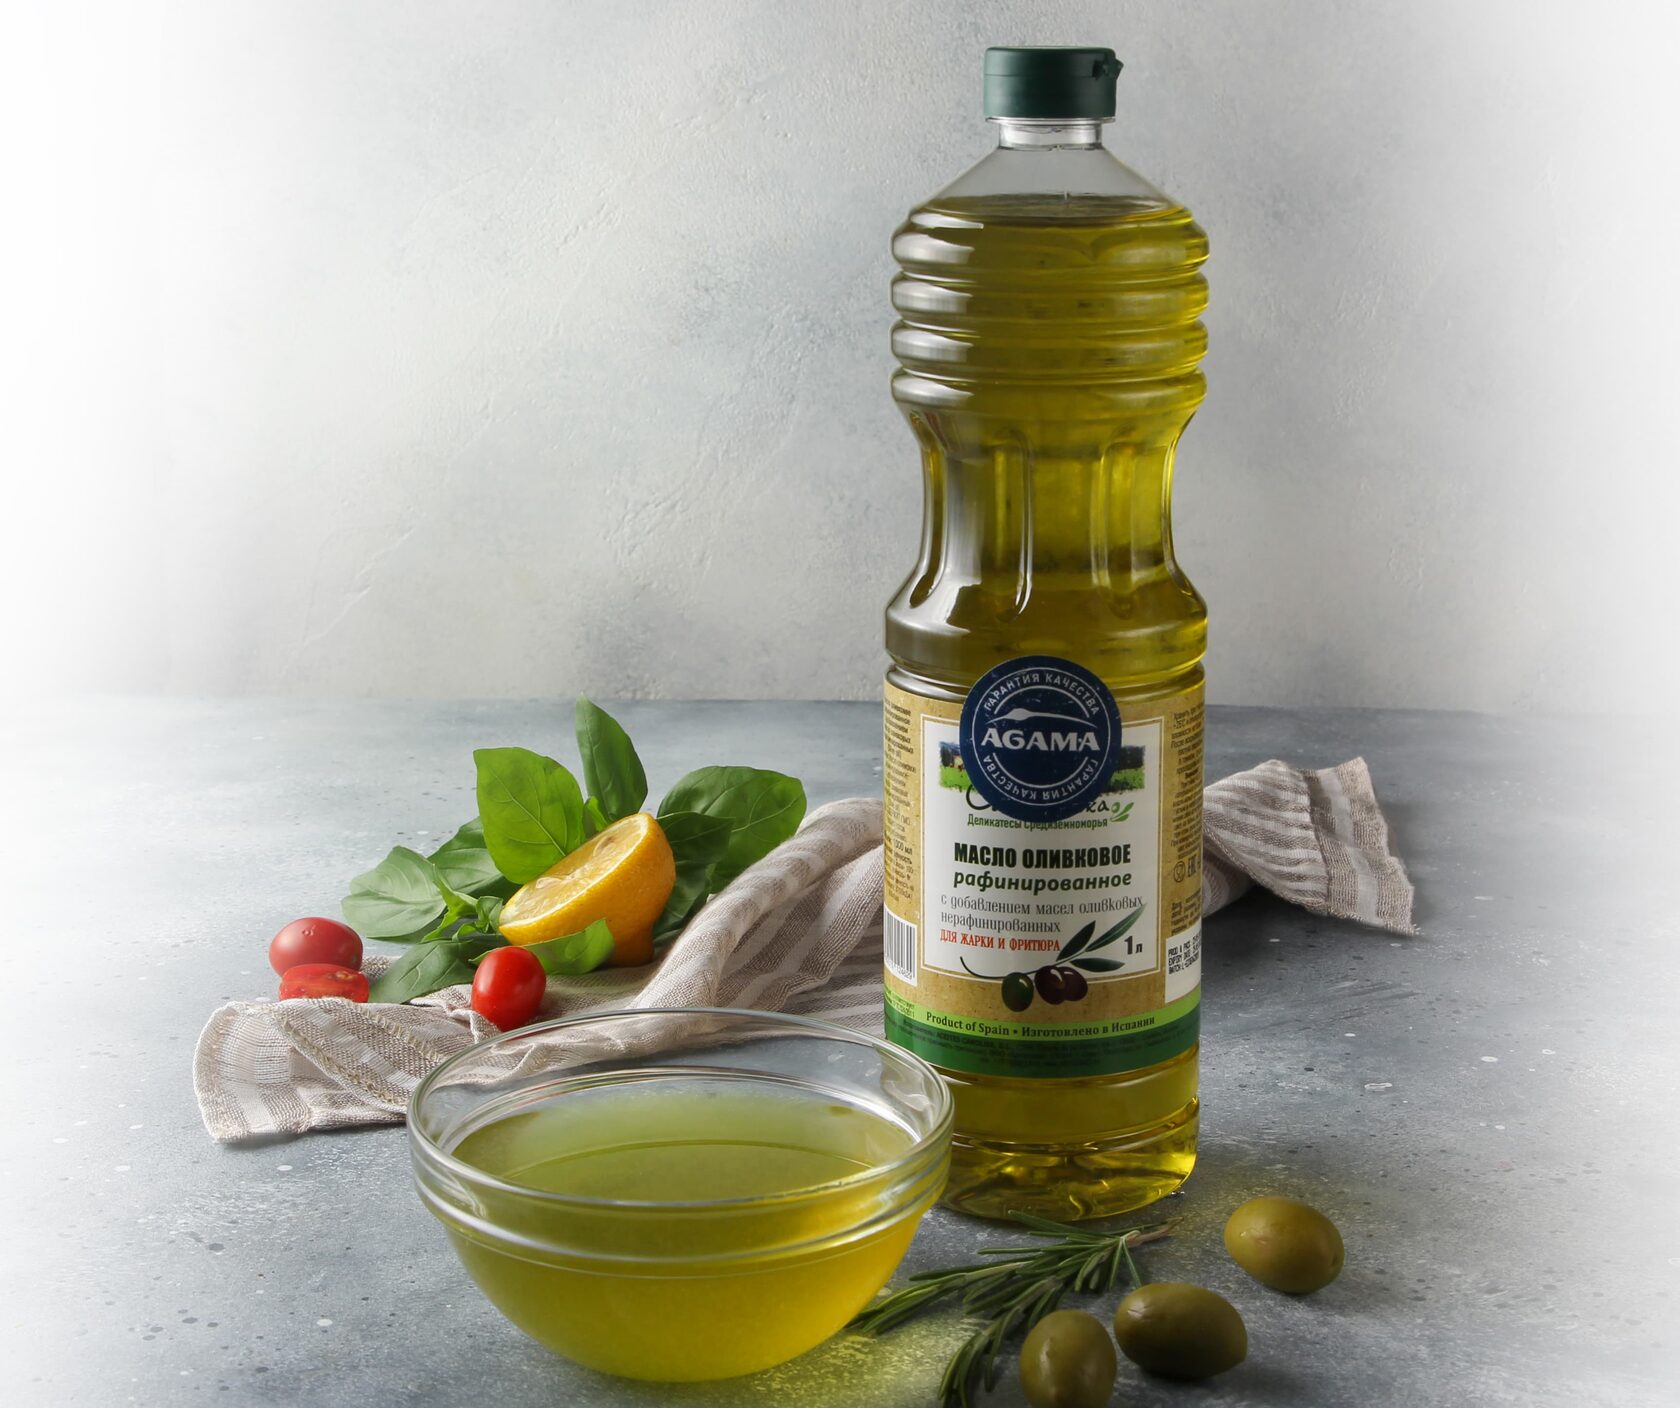 Нерафинированное масло вкус. Масло оливковое "Olivateca" Extra Virgin 1000 мл. Оливковое масло Olive Oil product, 1000 мл. Масло оливковое Olivateca рафинированное 1л. Sofos Pomace масло оливковое , 500 мл.